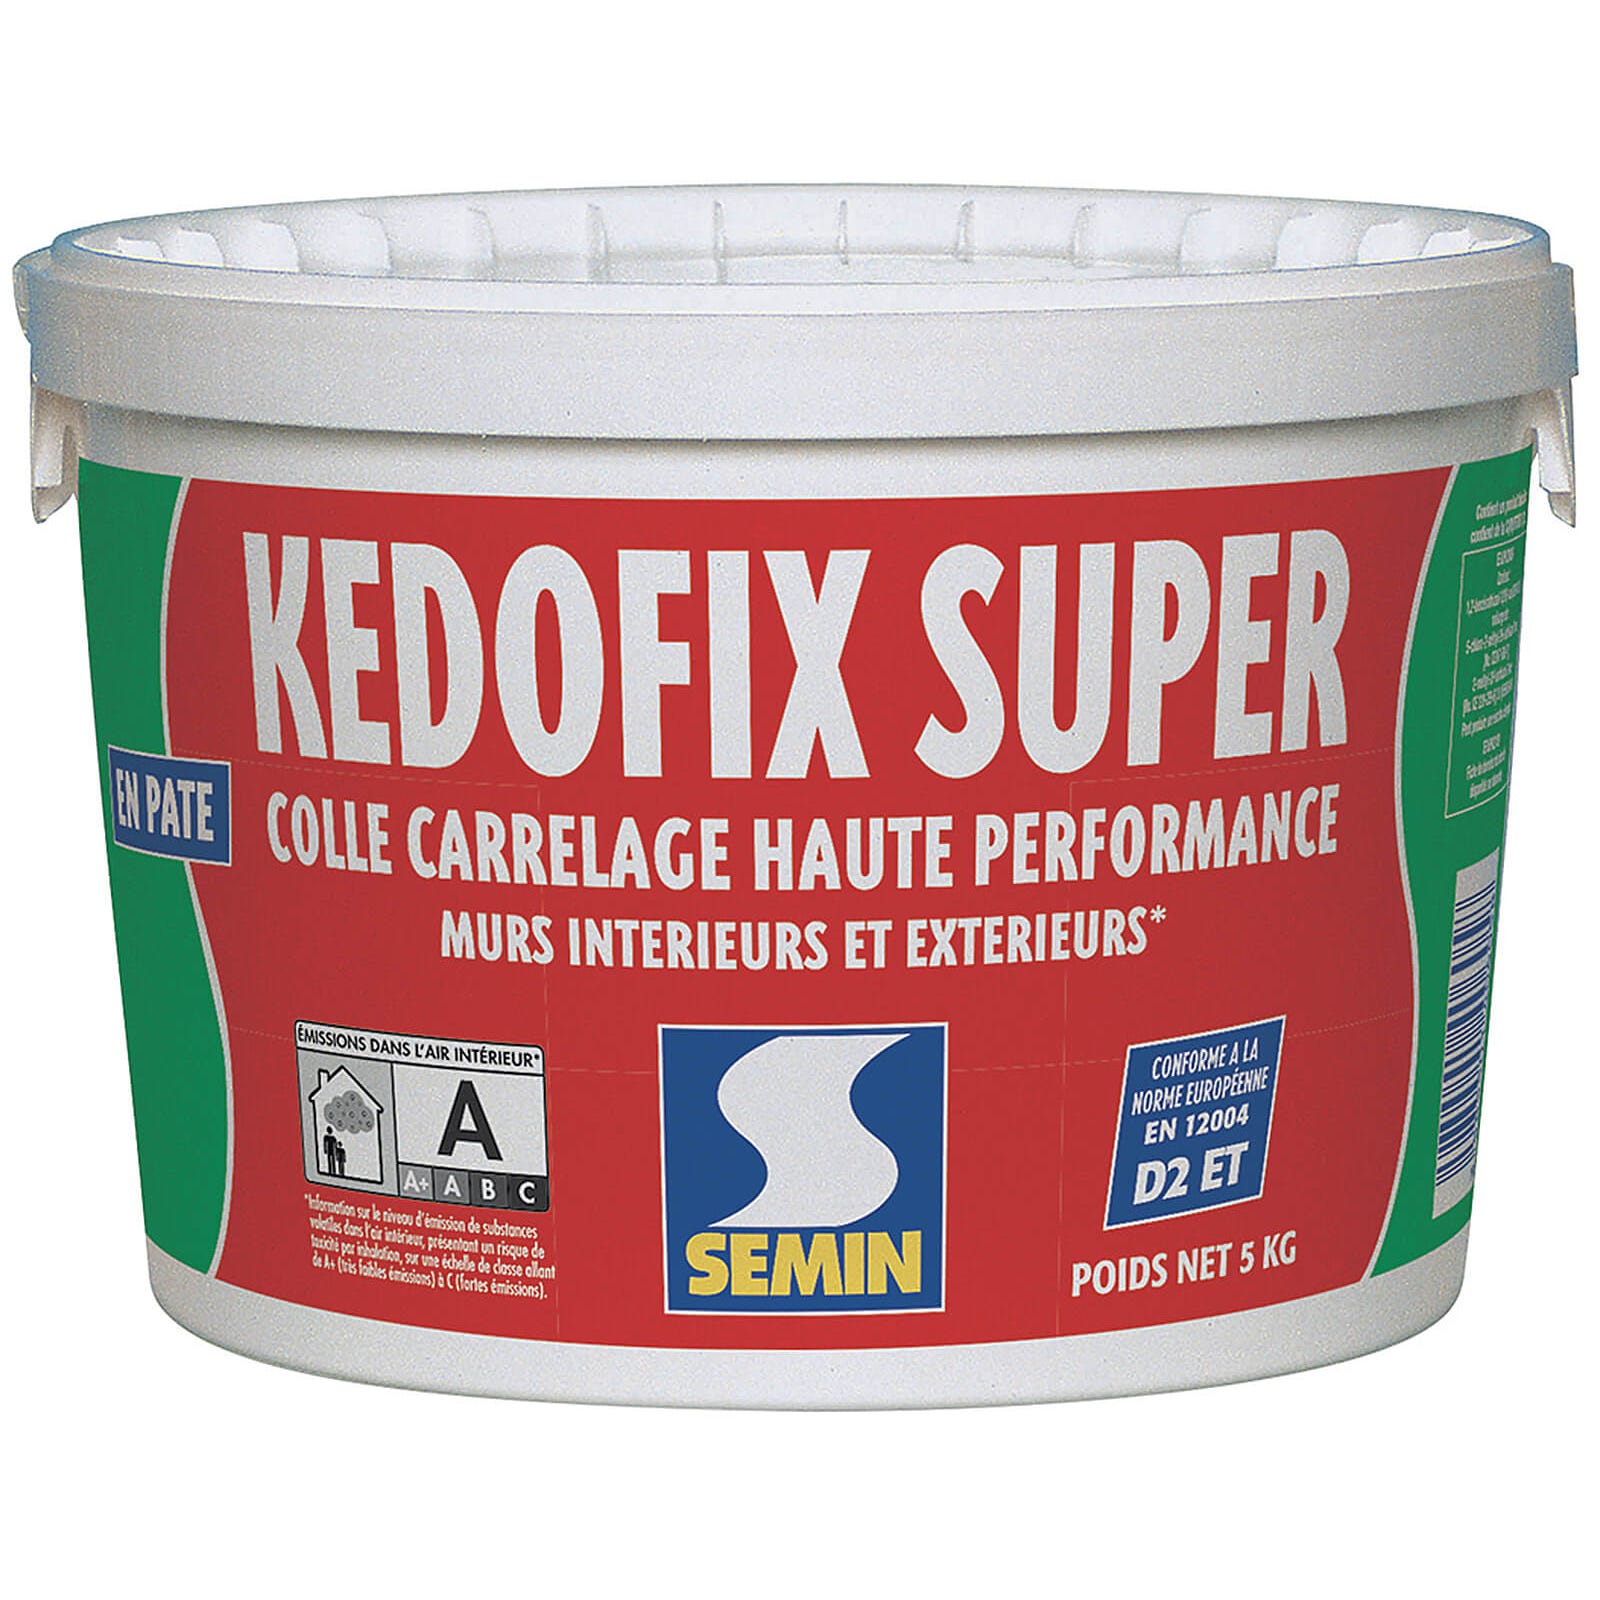 Colle pour Carrelage Haute Performance Kedofix Semin, Prêt à l'emploi, Intérieur/extérieur, seau de 5 kg 0